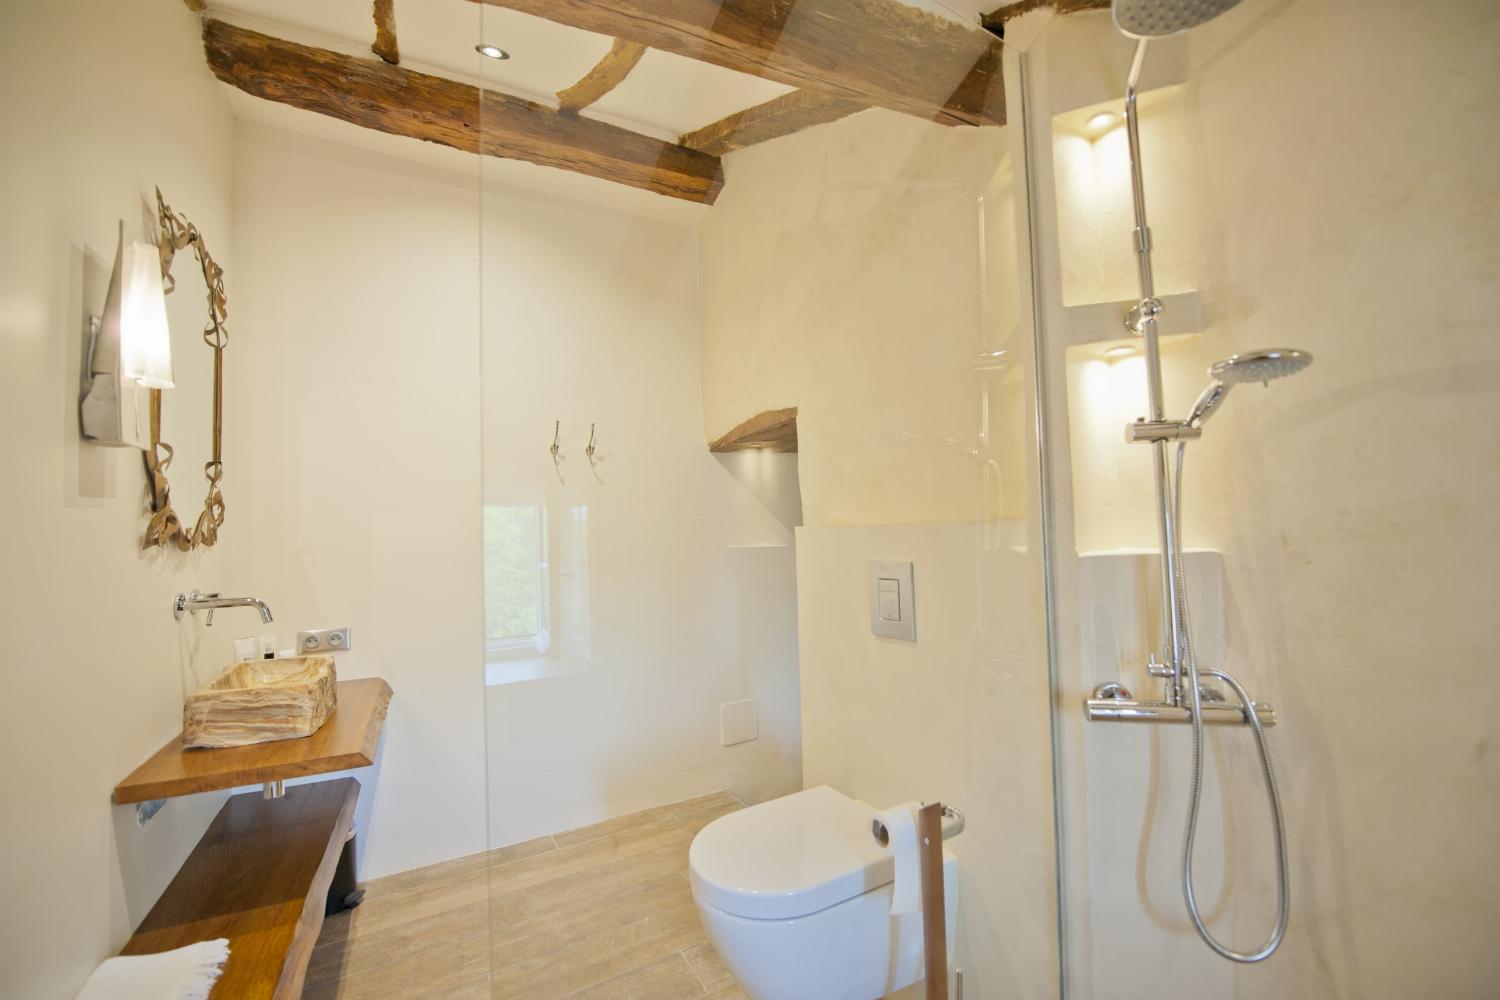 Salle de bain | Location de vacances dans le Lot-et-Garonne